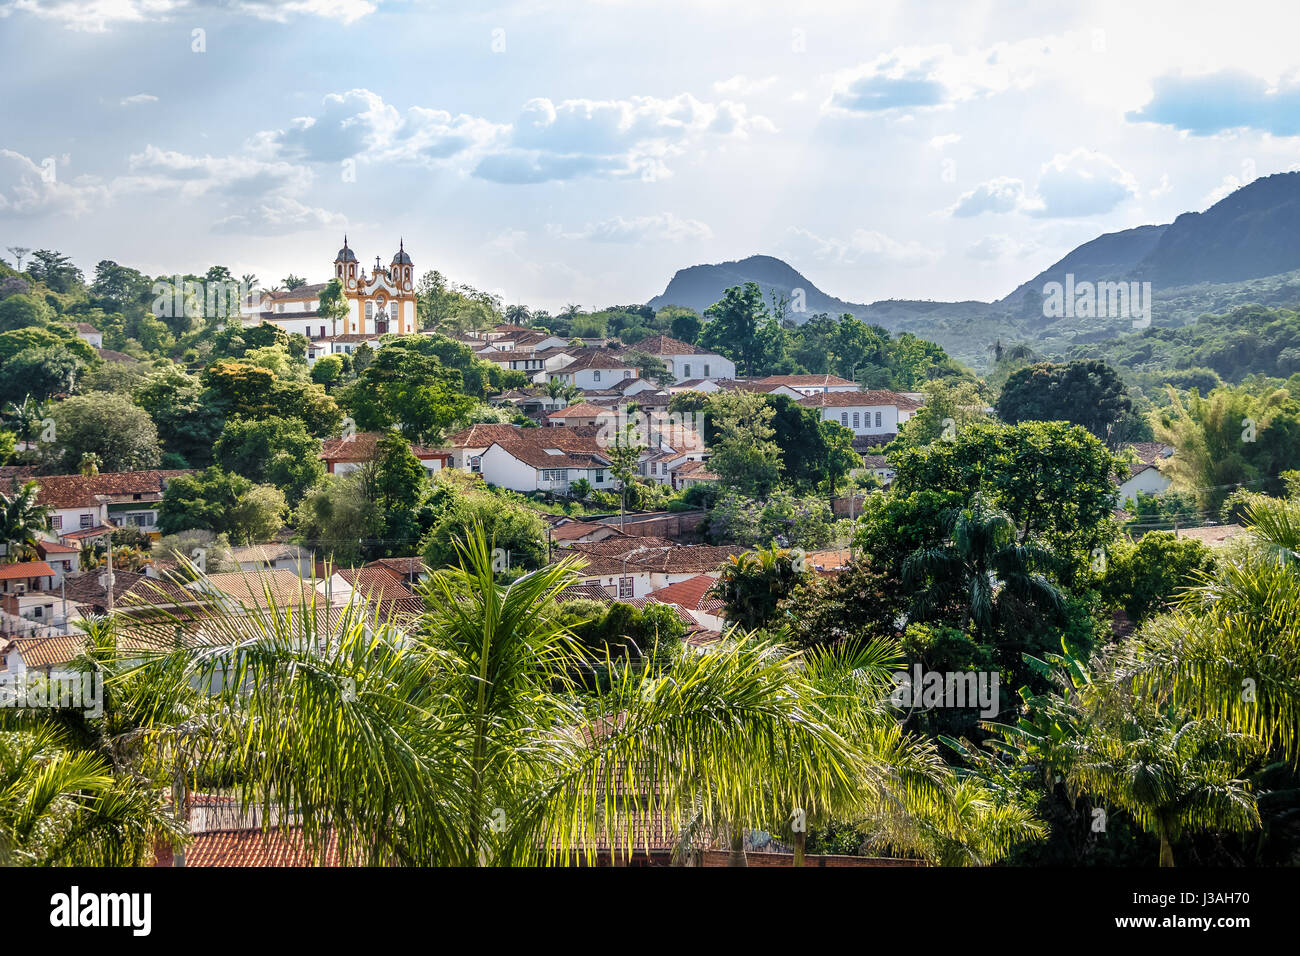 Vue aérienne de la ville de Tiradentes et église de Santo Antonio - Tiradentes, Minas Gerais, Brésil Banque D'Images